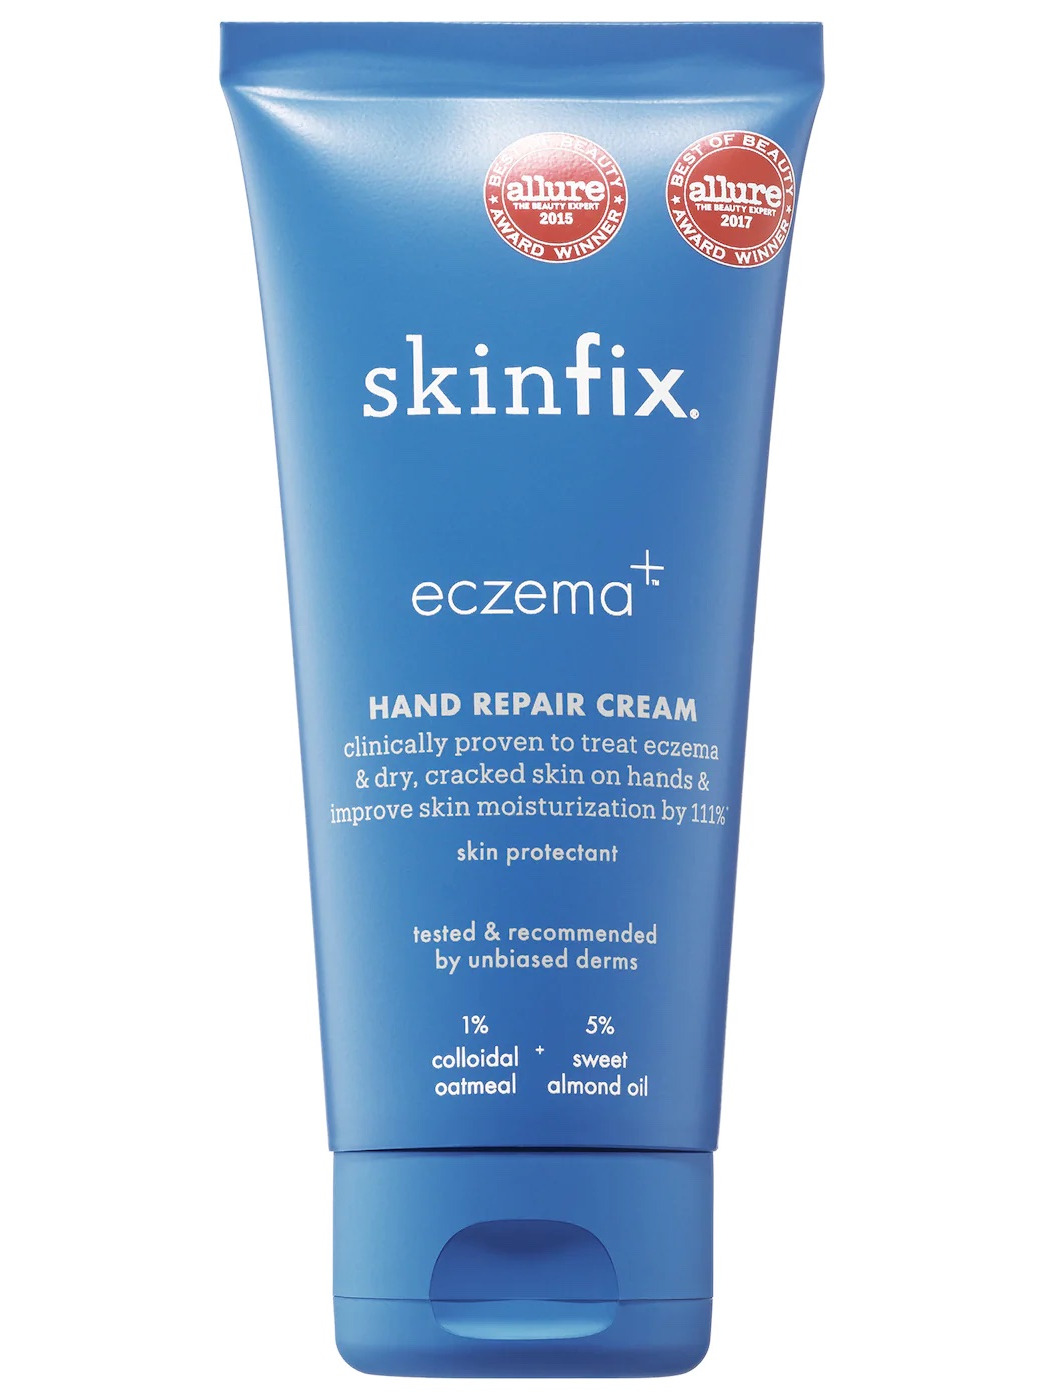 eczema hand repair cream